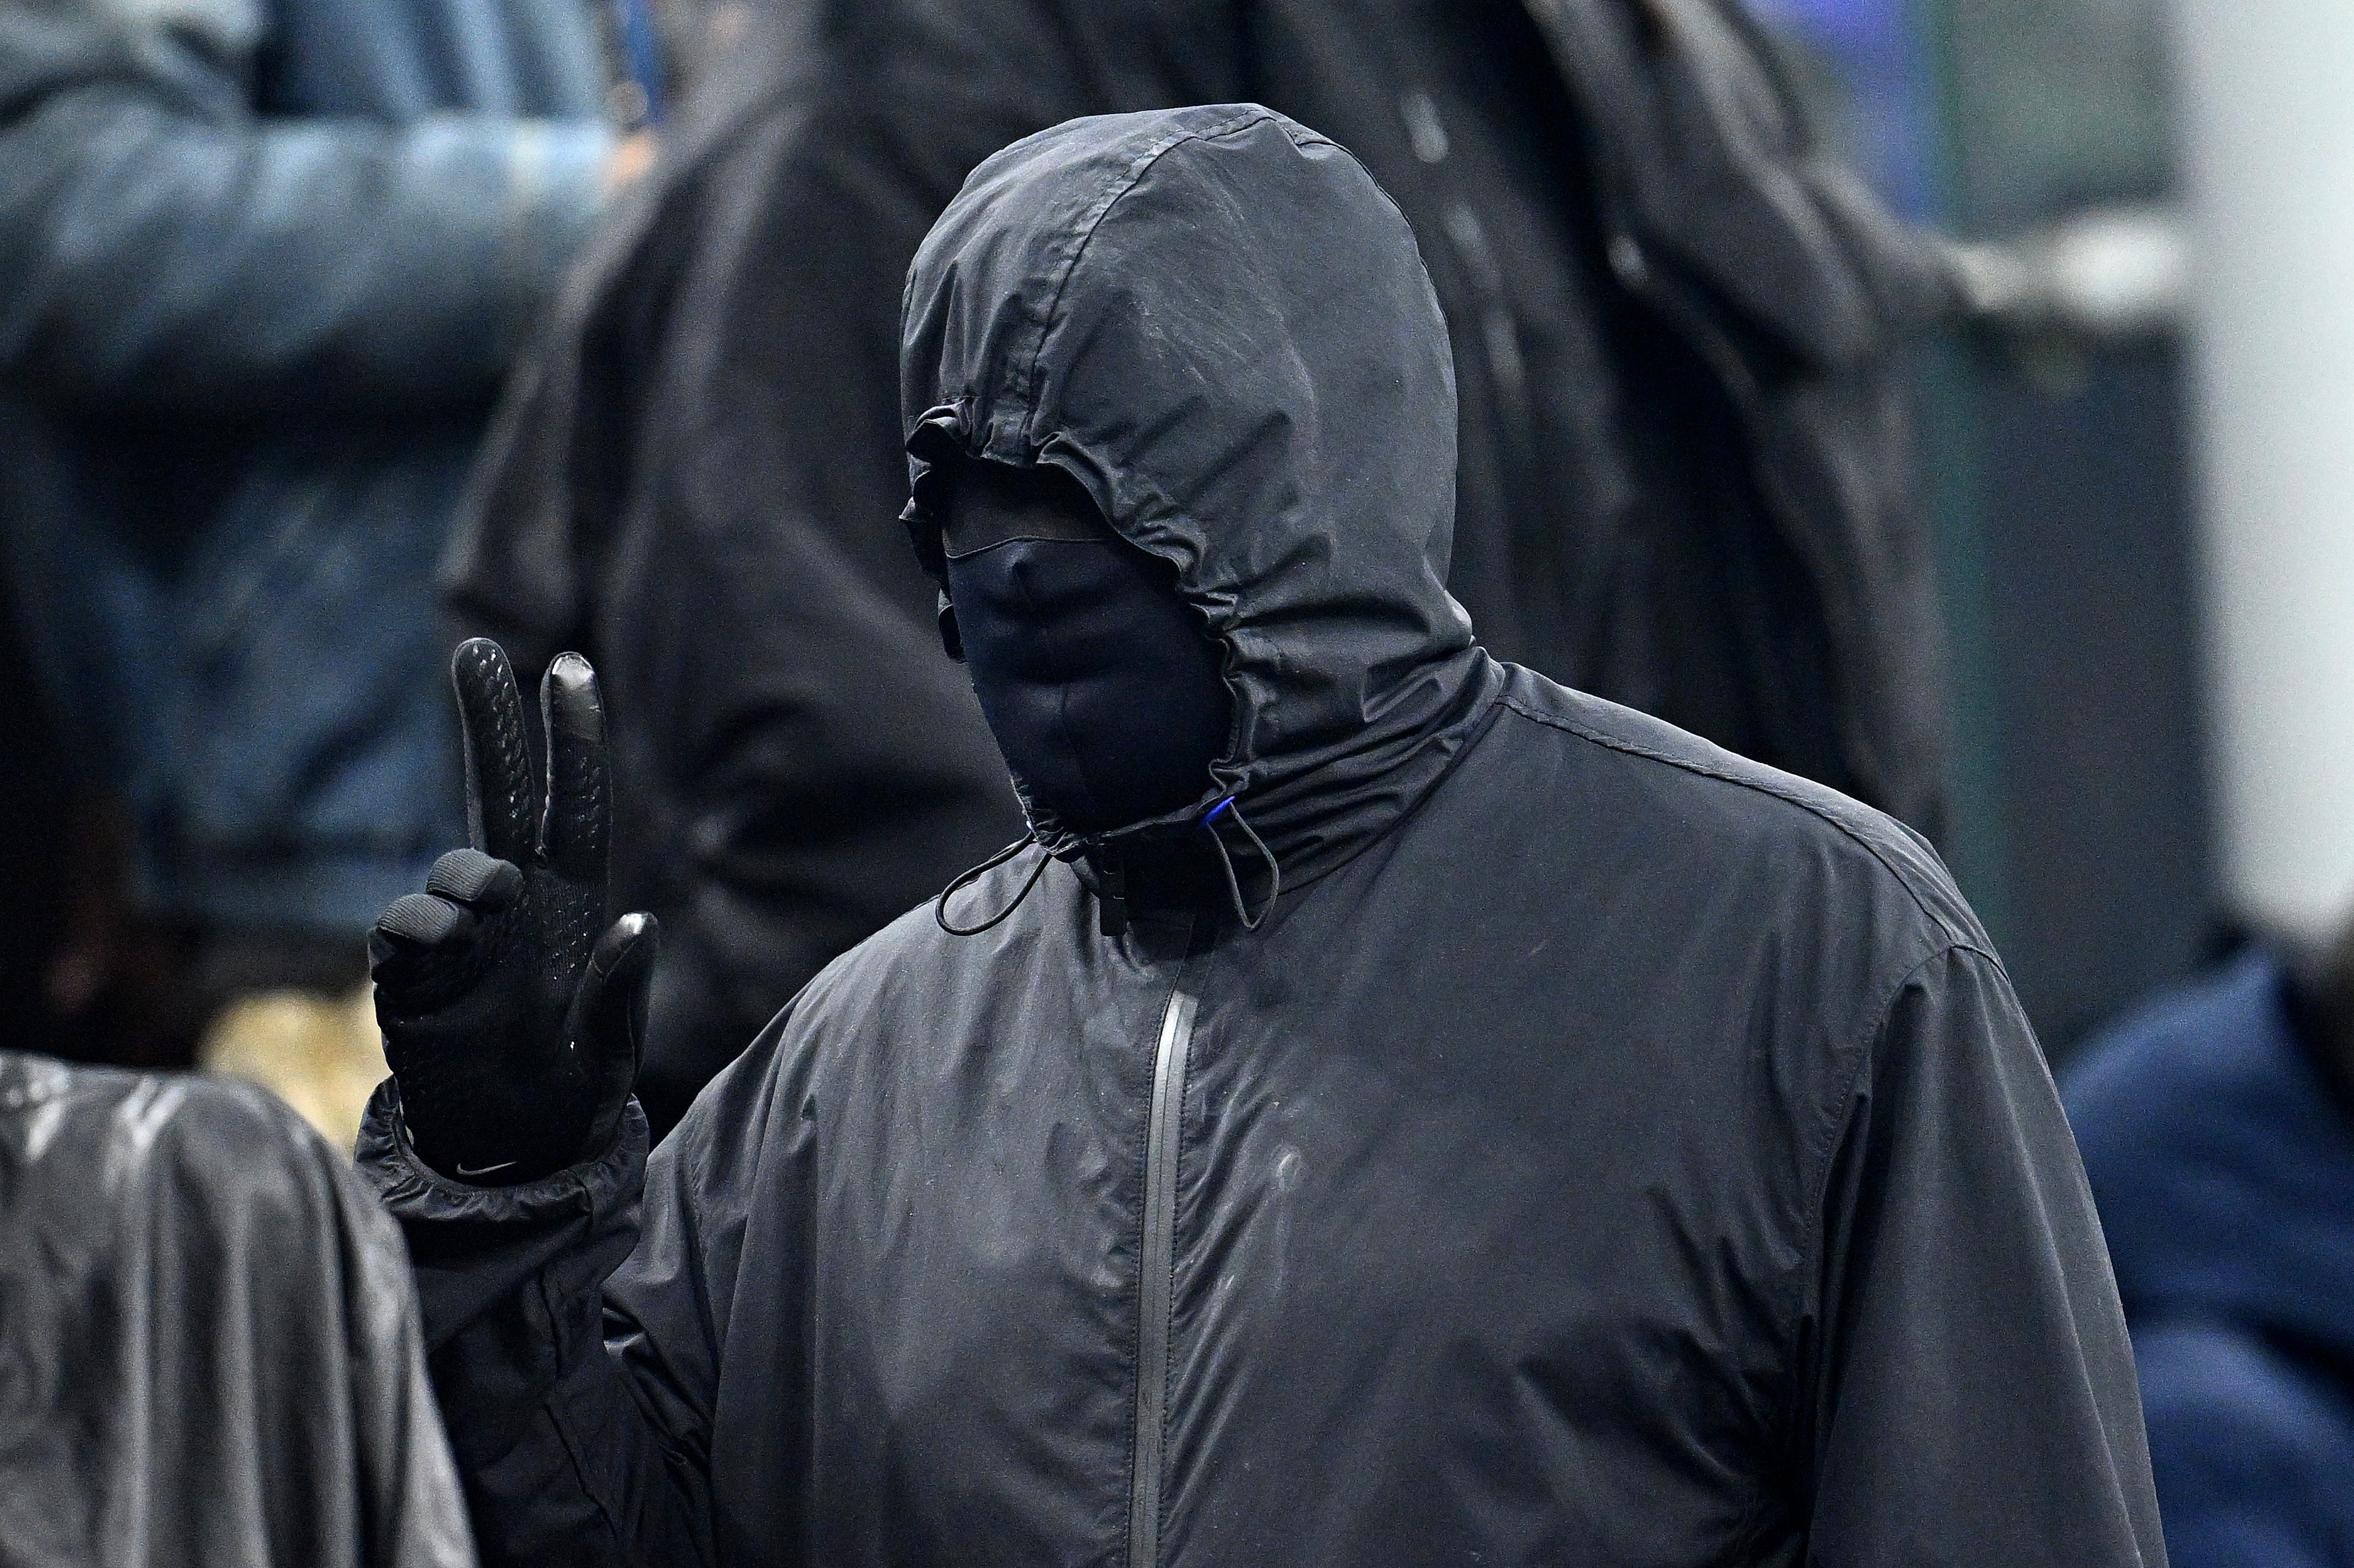 Der Rapper trug ganz Schwarz – inklusive einer Maske über dem gesamten Gesicht